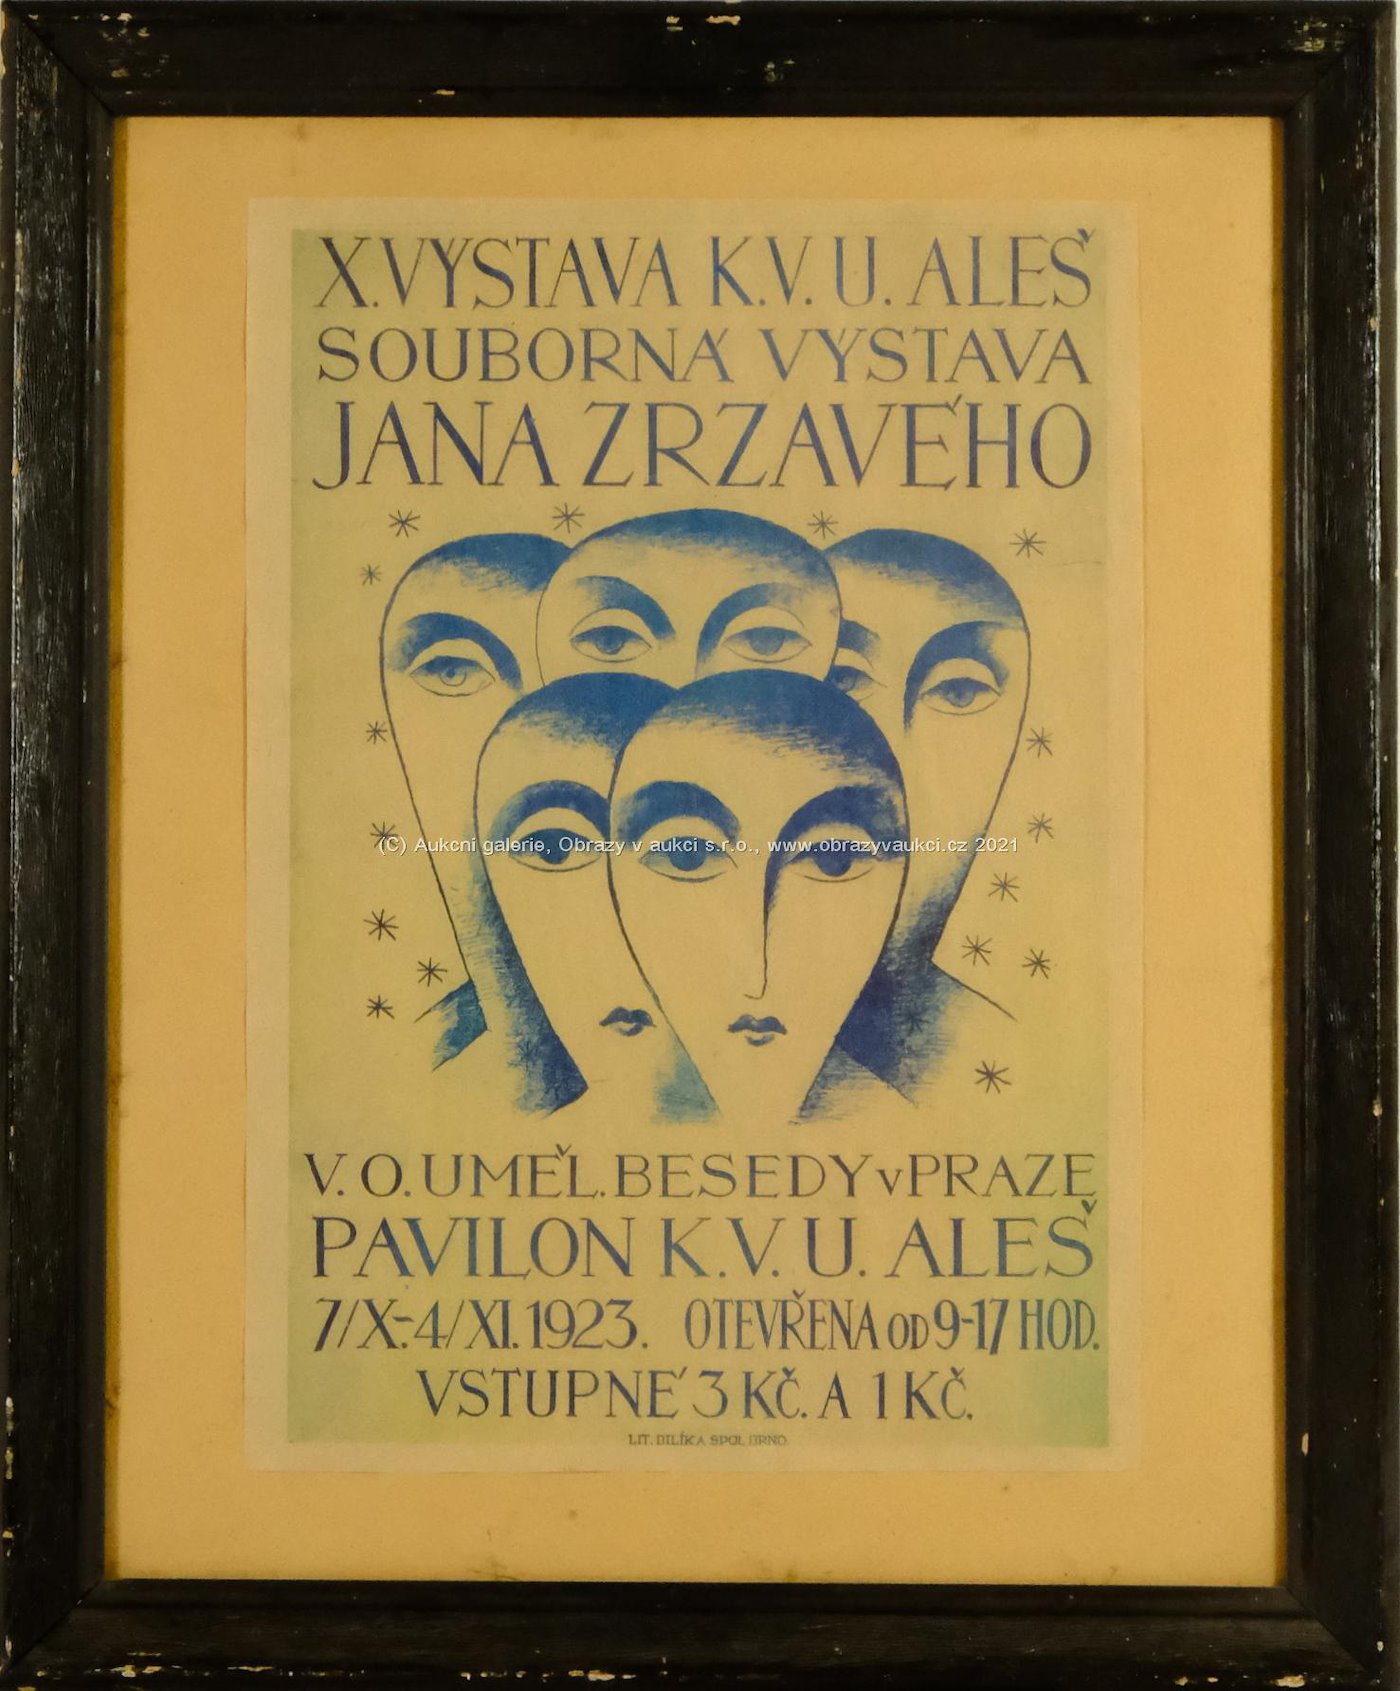 Jan Zrzavý - Plakát k X. výstavě K.V.U. Aleš Jana Zrzavého